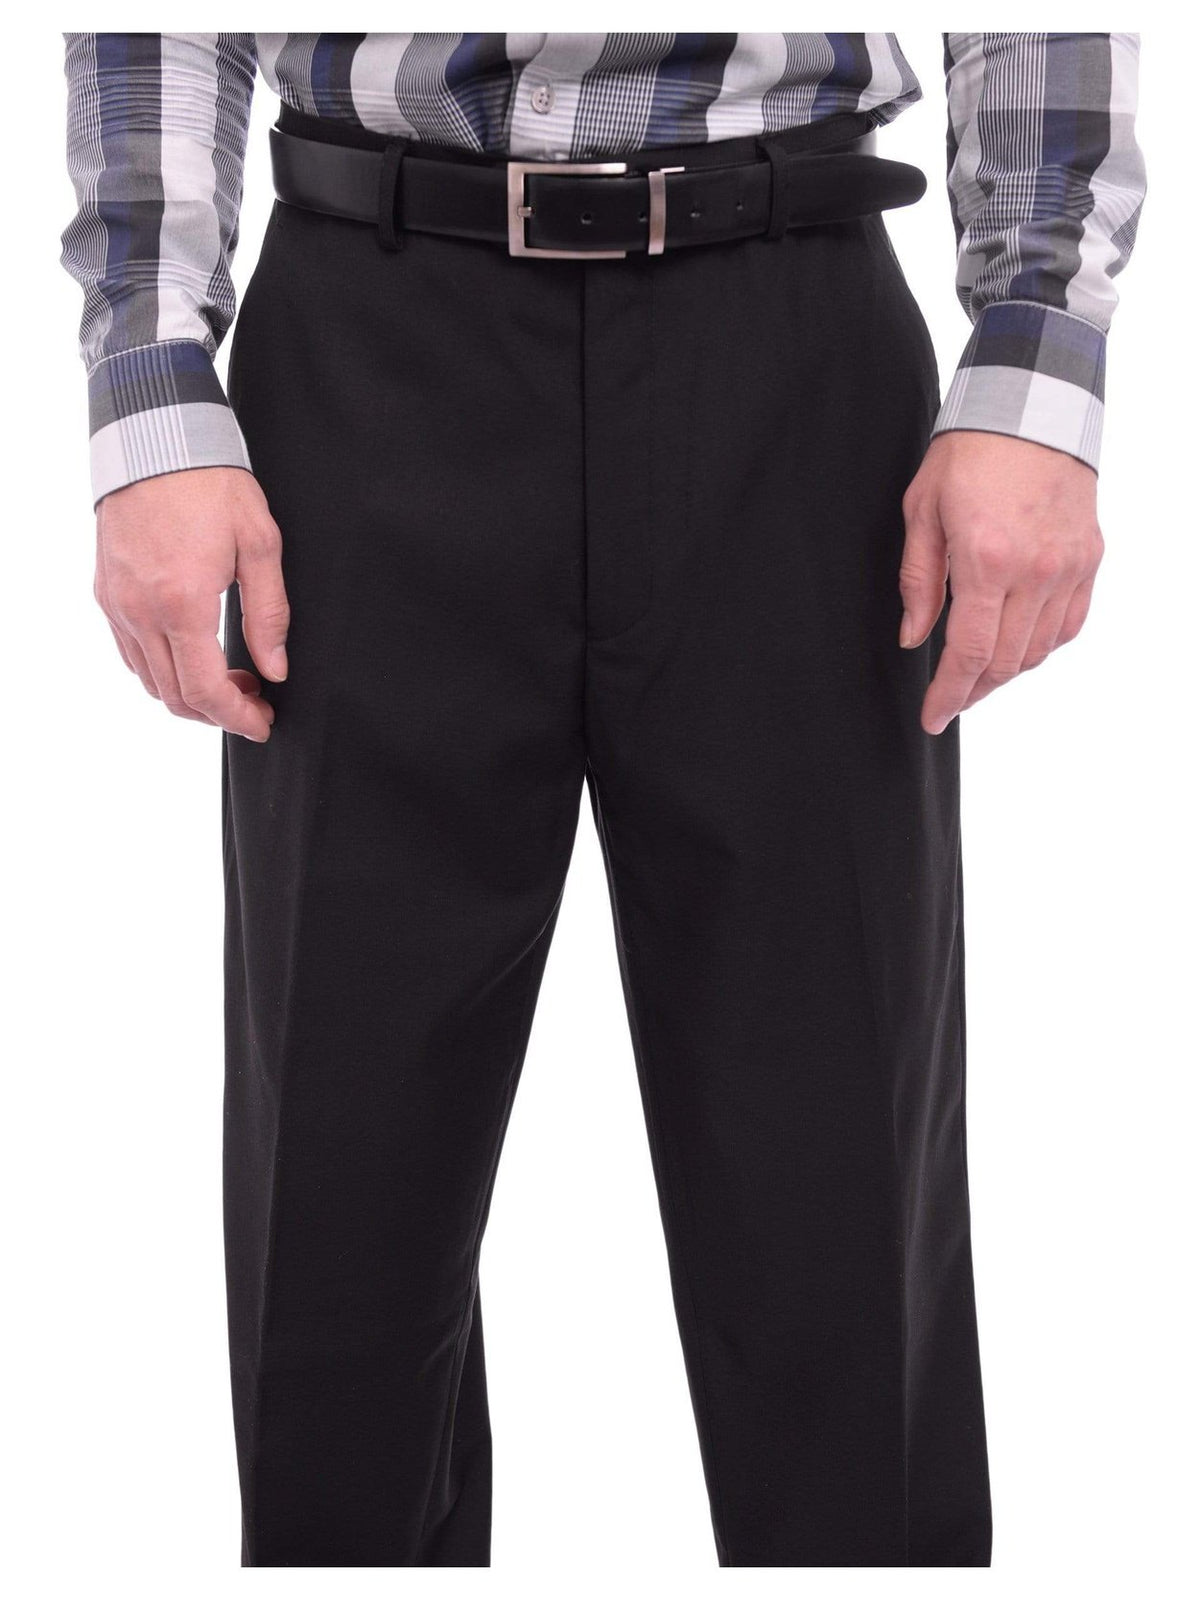 Ferrecci PANTS Ferrecci Regular Fit Solid Black Flat Front Dress Pants